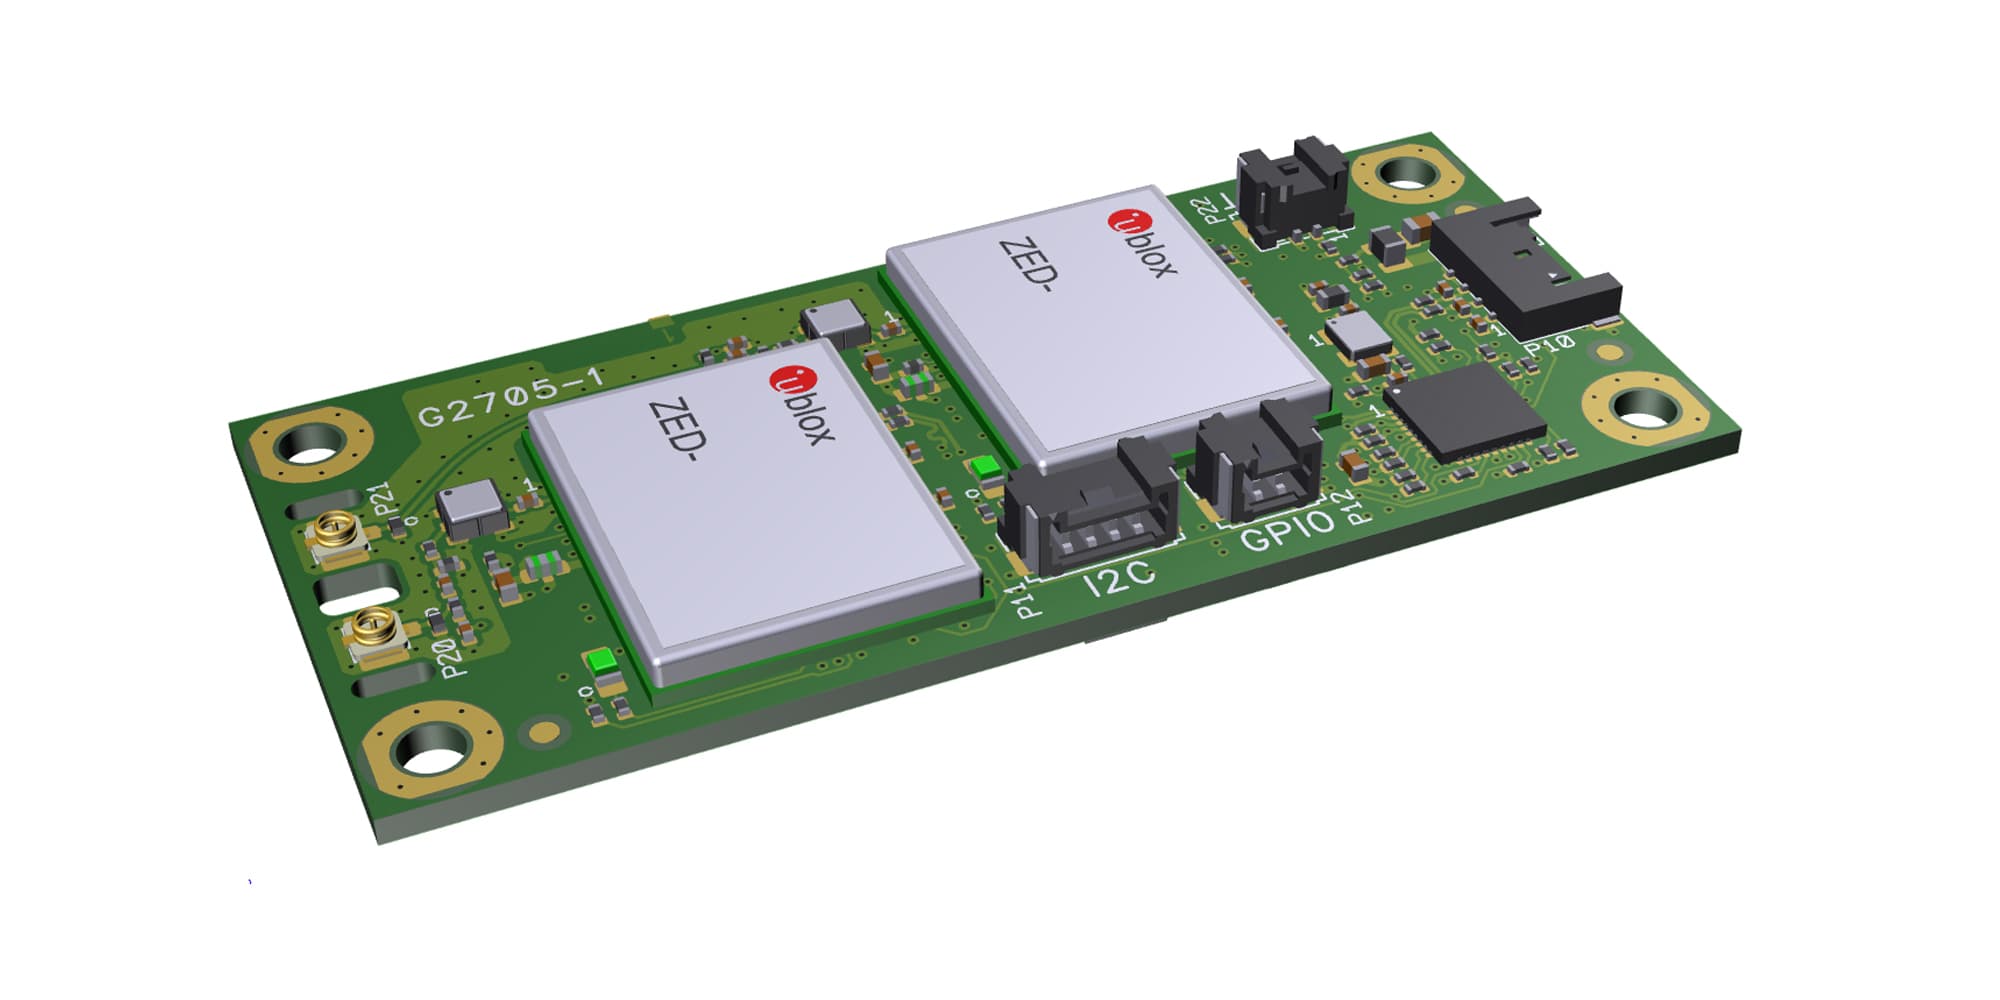 u-blox ZED F9 Industrial Multiband GNSS module